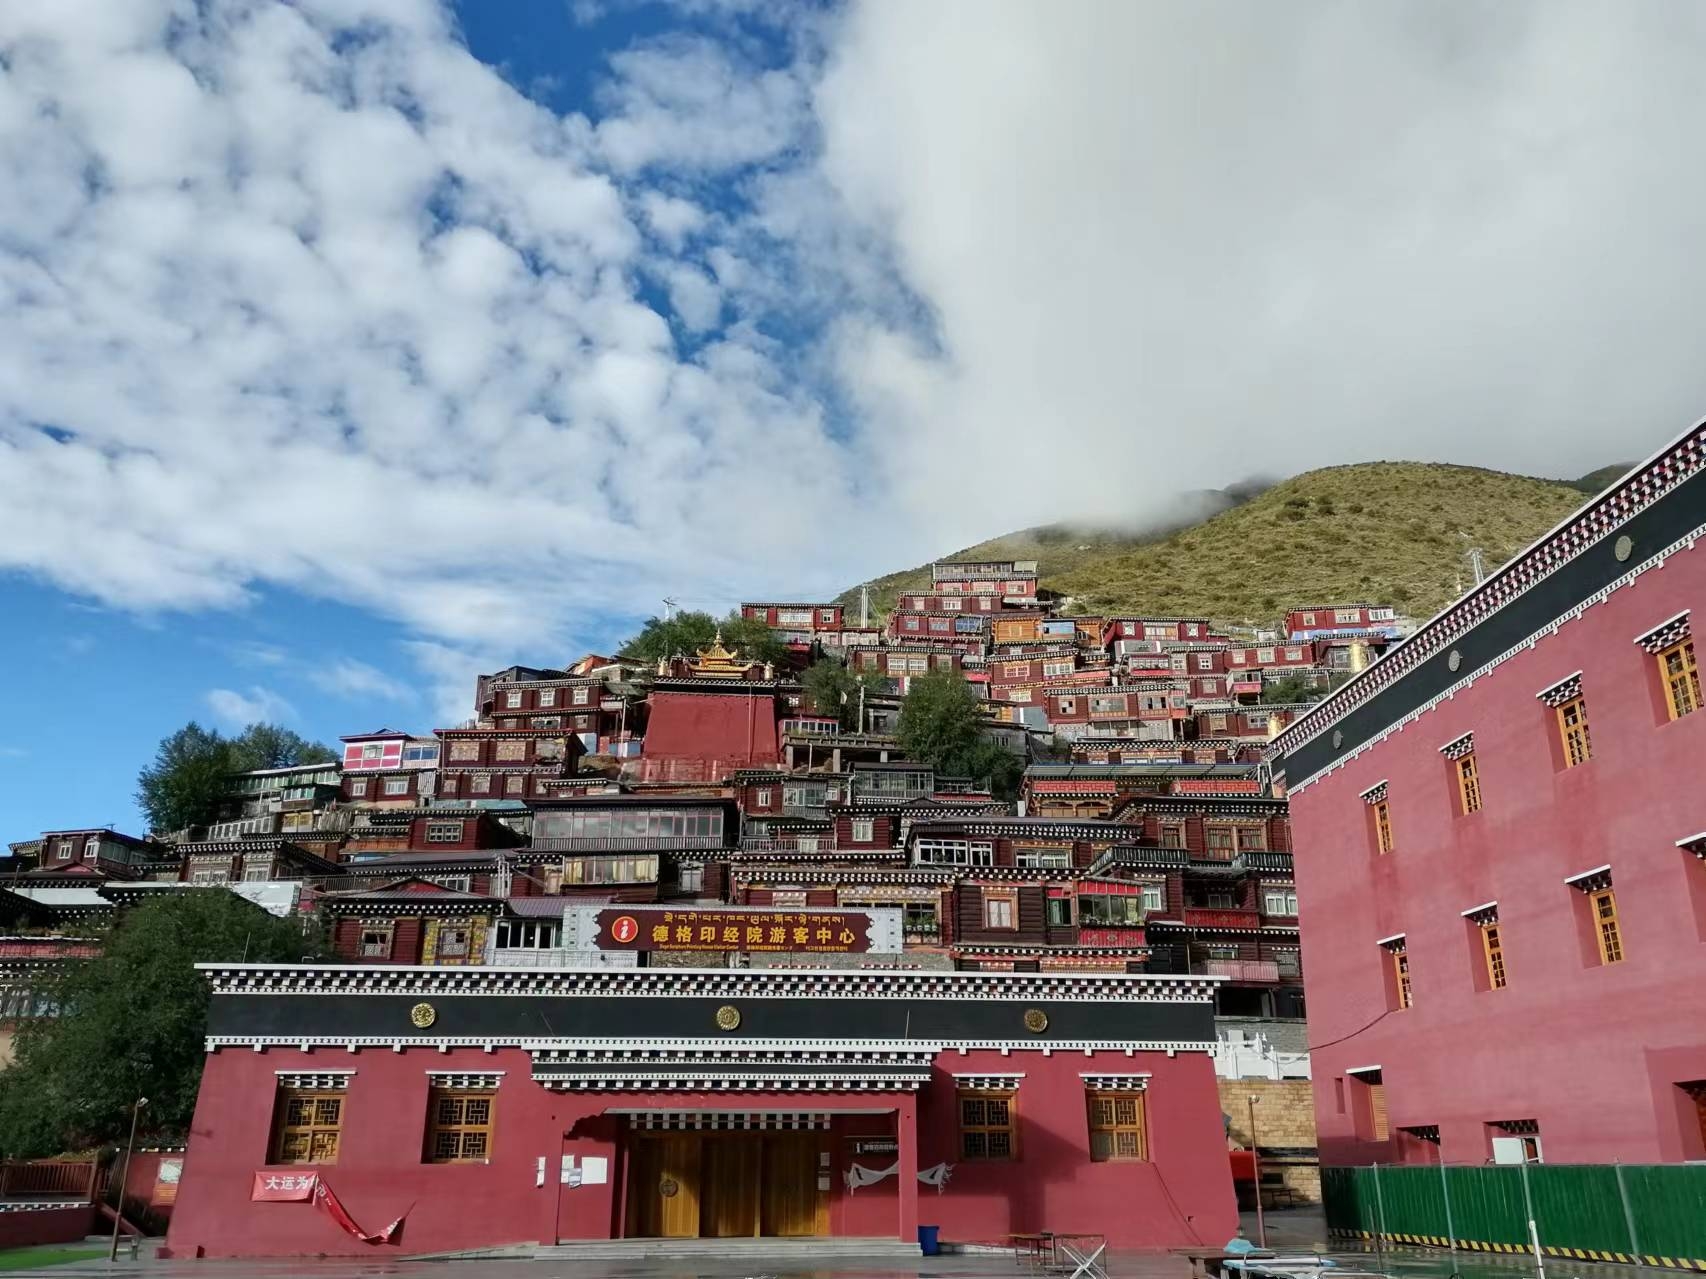 #发现宝藏旅行地 #发现旅途的色彩 德格印经院位于四川甘孜州德格县城内，这里是康巴藏区的文化中心，一